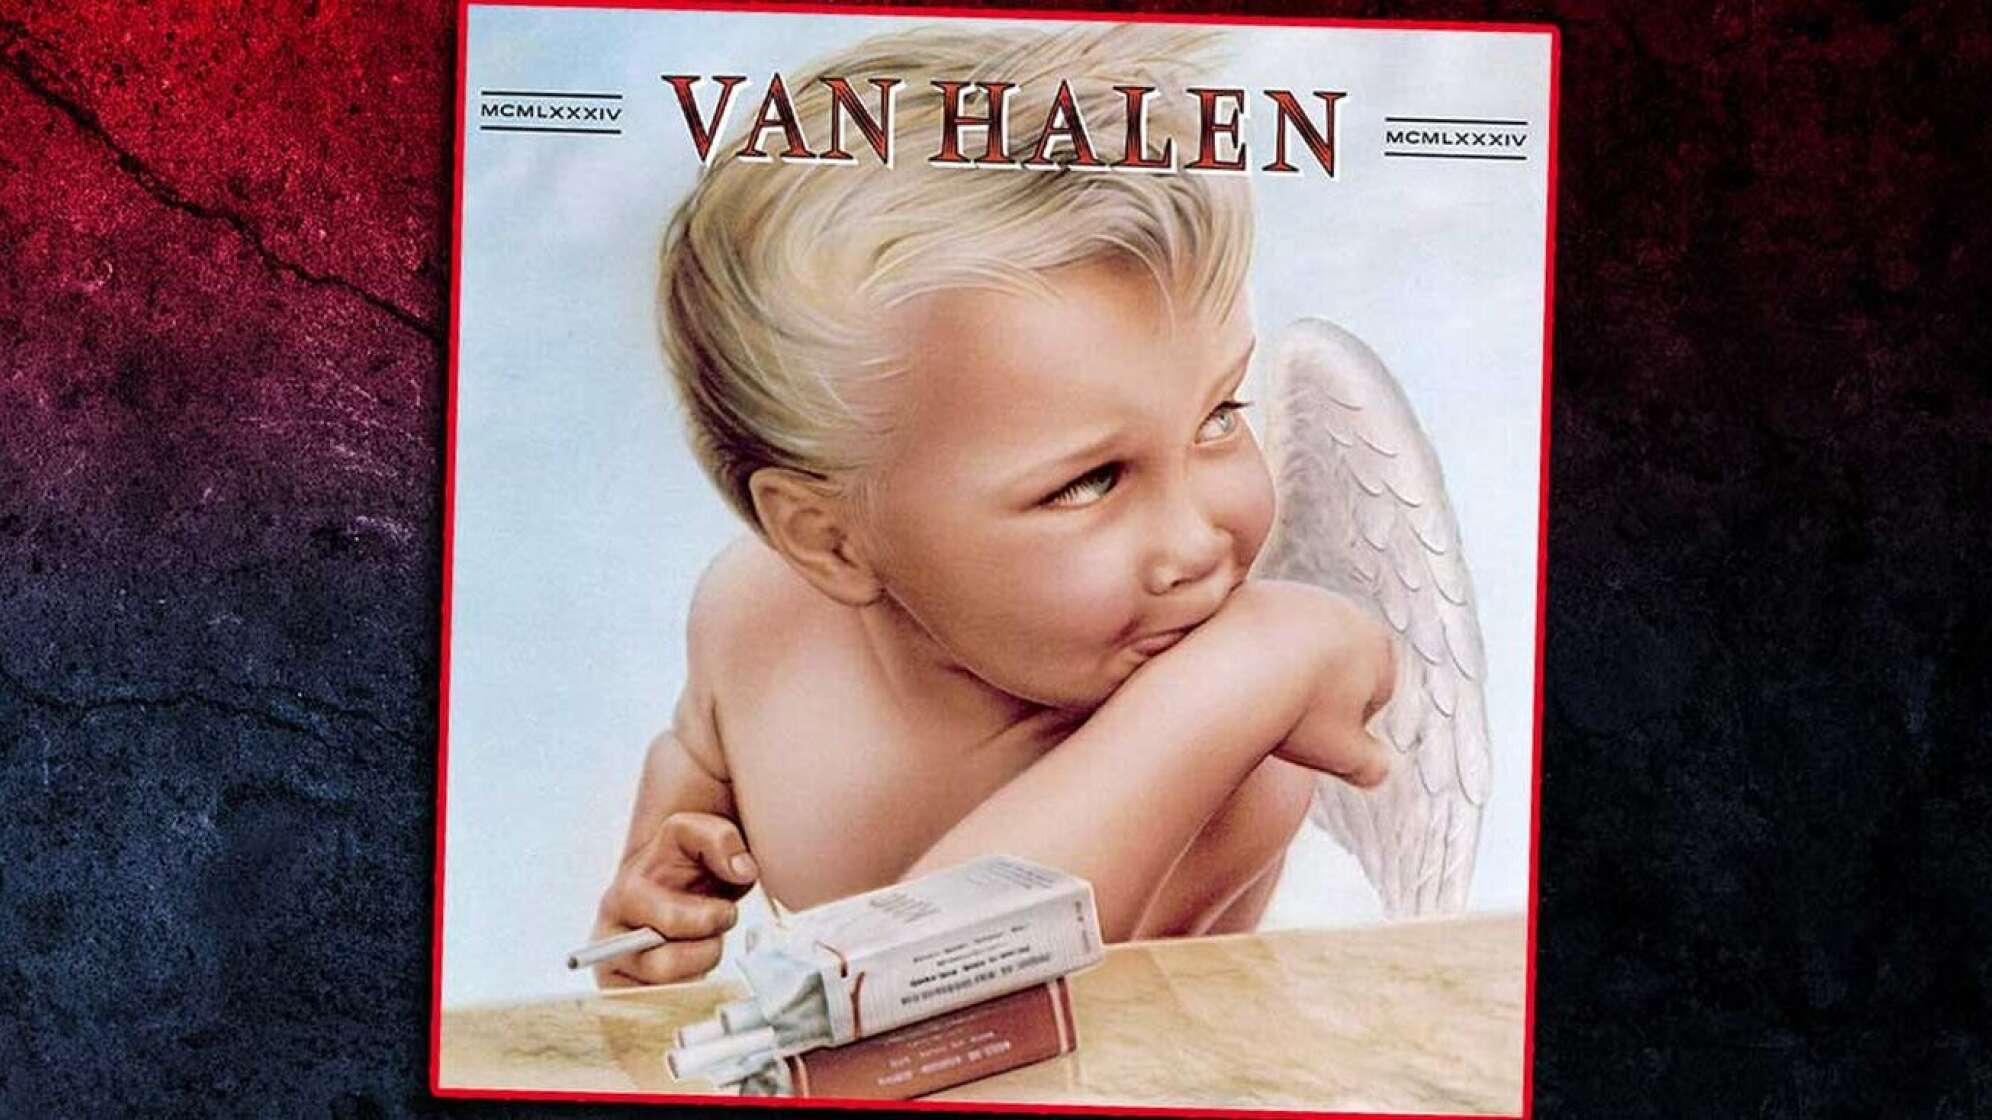 Album-Cover Van Halen "1984"